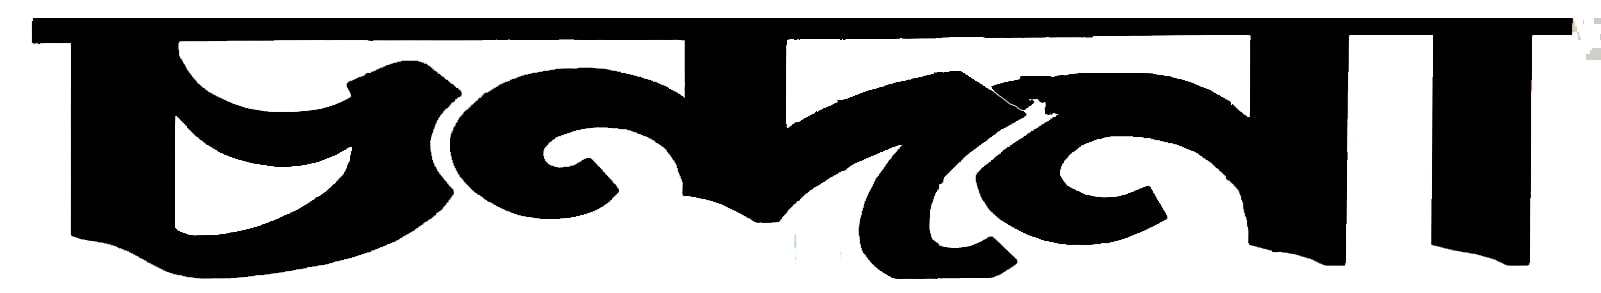 মোবাইল ডেটার সর্বোচ্চ ও সর্বনিম্ন দাম নির্ধারণ করবে বিটিআরসি